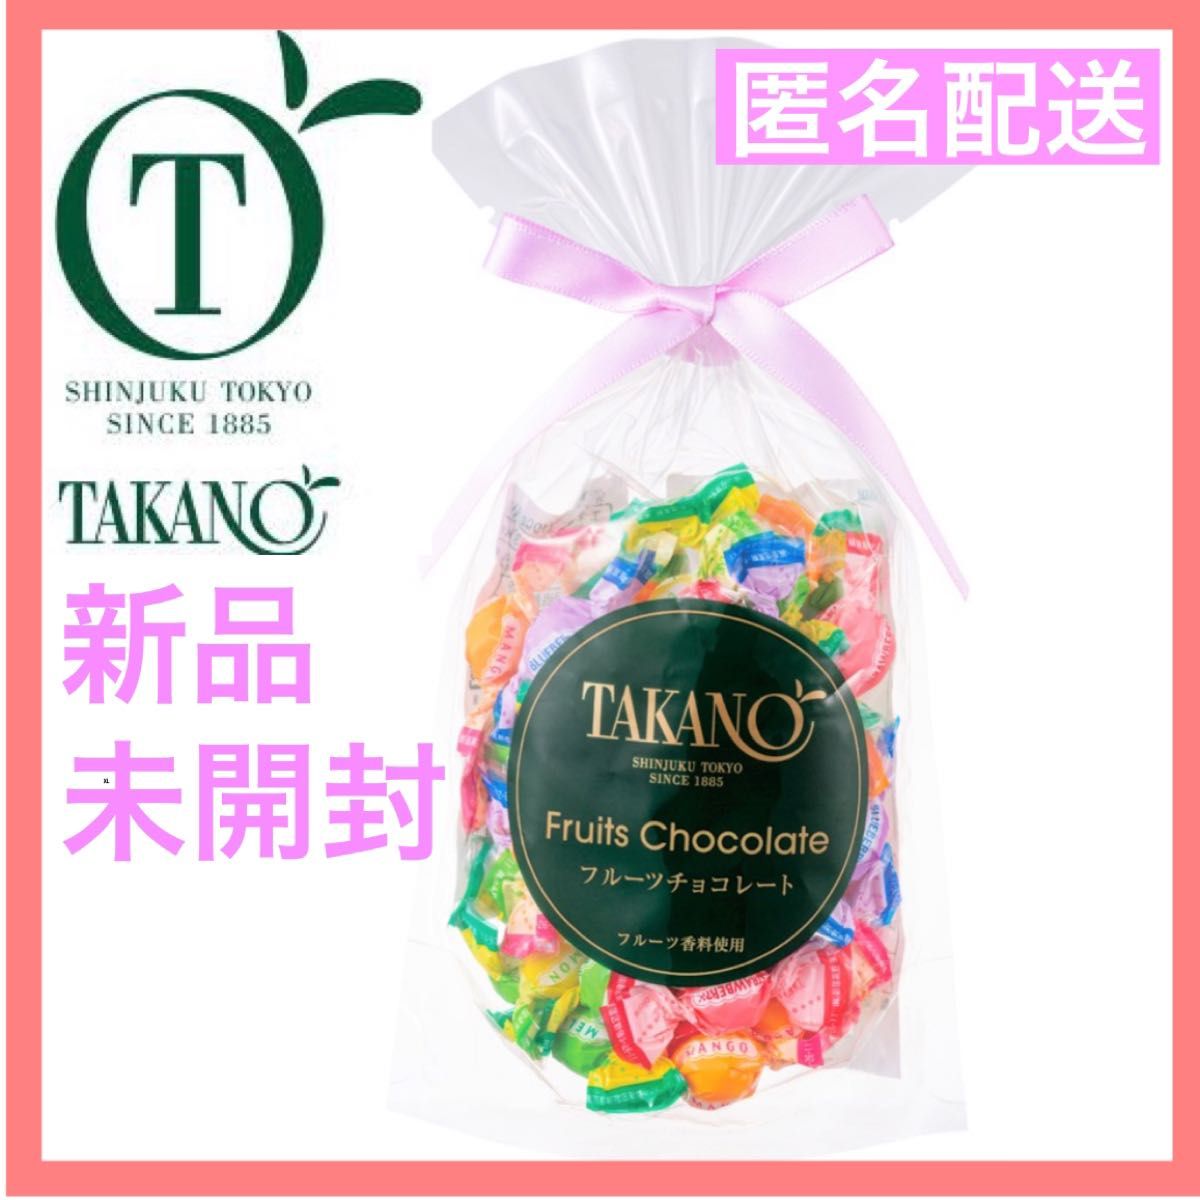 新宿 高野 TAKANO タカノ フルーツチョコレート 80g タカノフルーツ 個包装 プレゼント ギフト タカノフルーツ 詰合せ